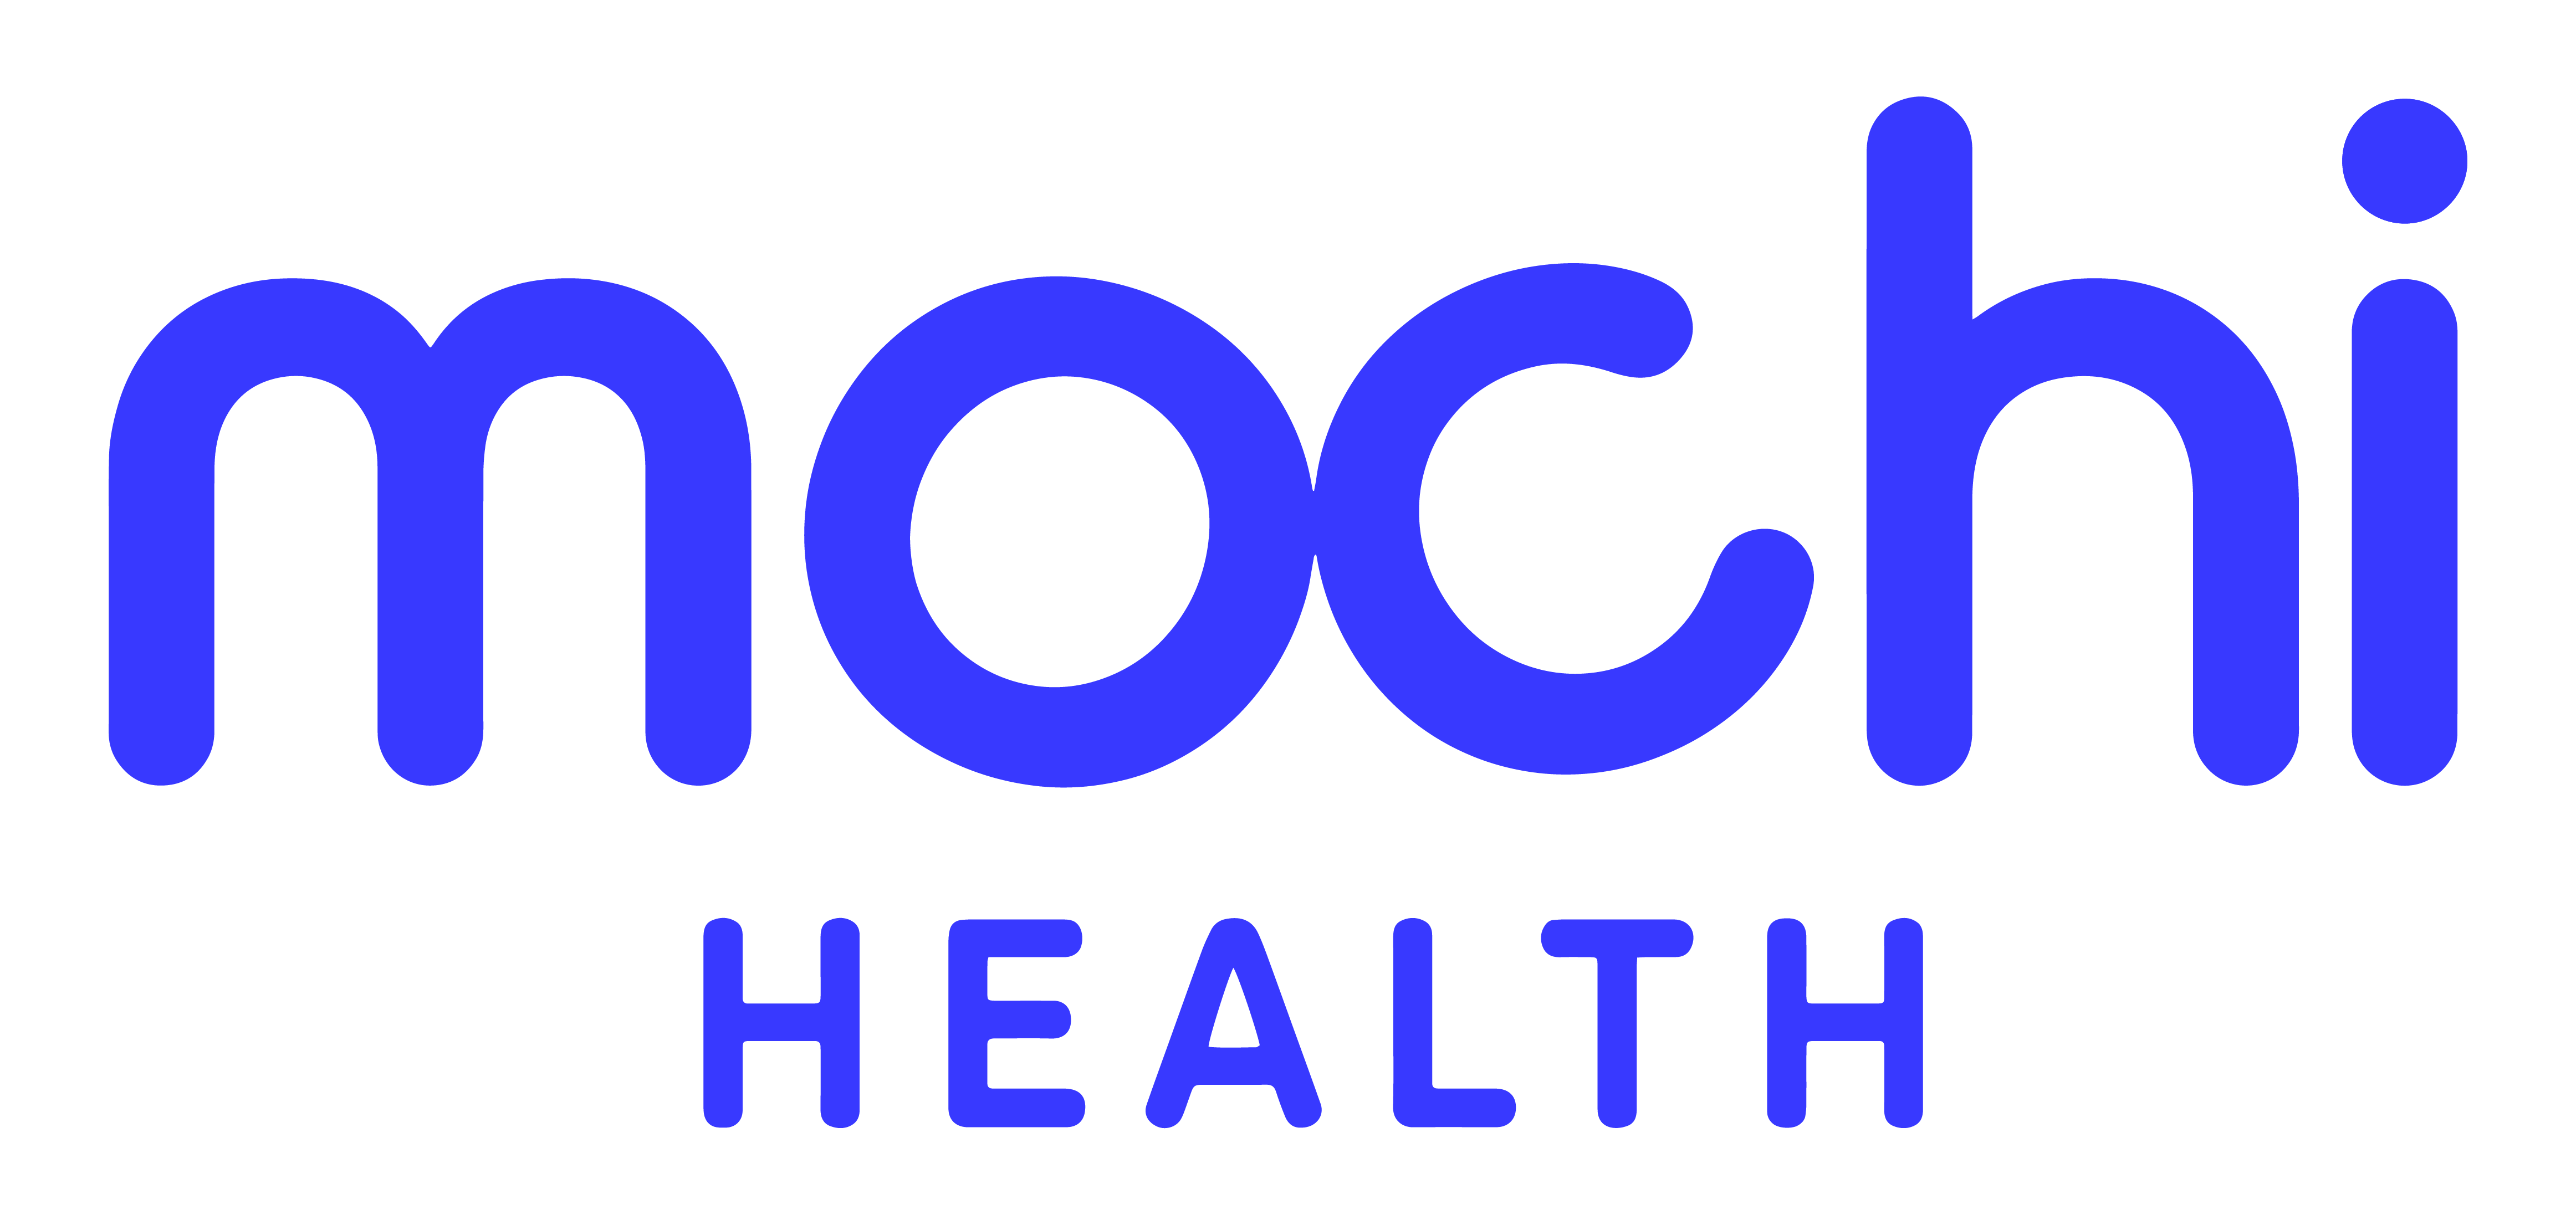 Mochi Health